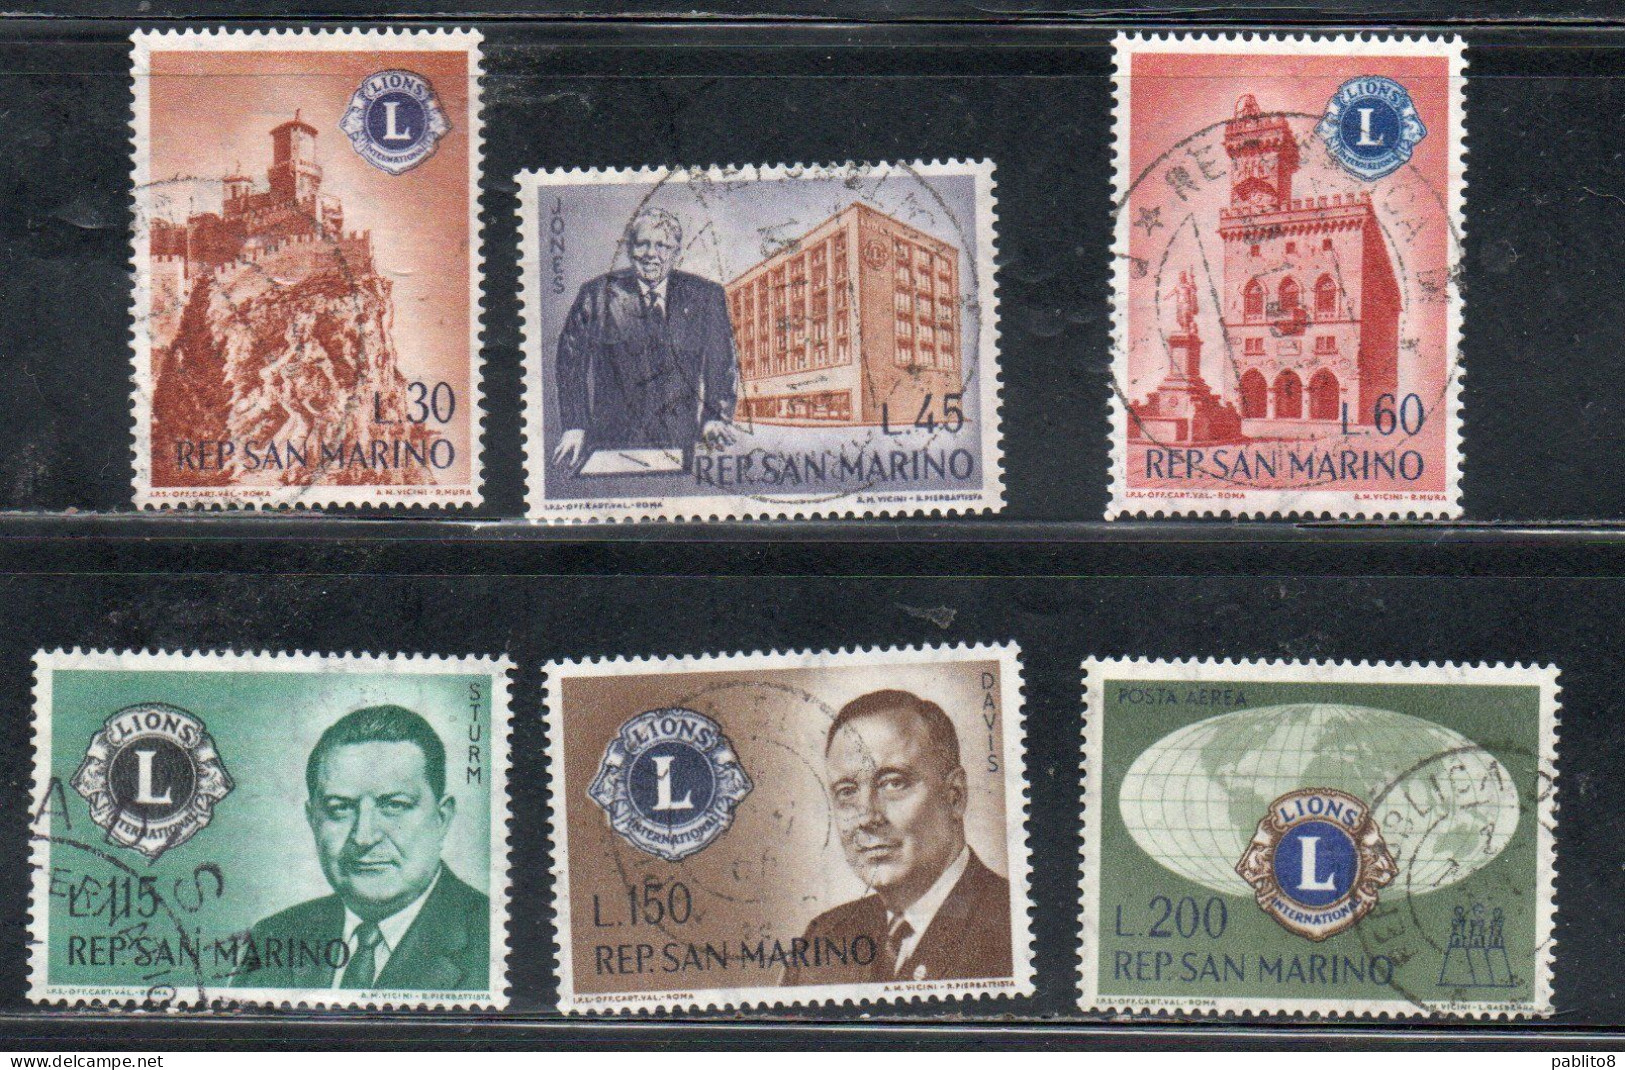 REPUBBLICA DI SAN MARINO 1960 LIONS CLUB SERIE COMPLETA COMPLETE SET USATA USED OBLITERE' - Used Stamps